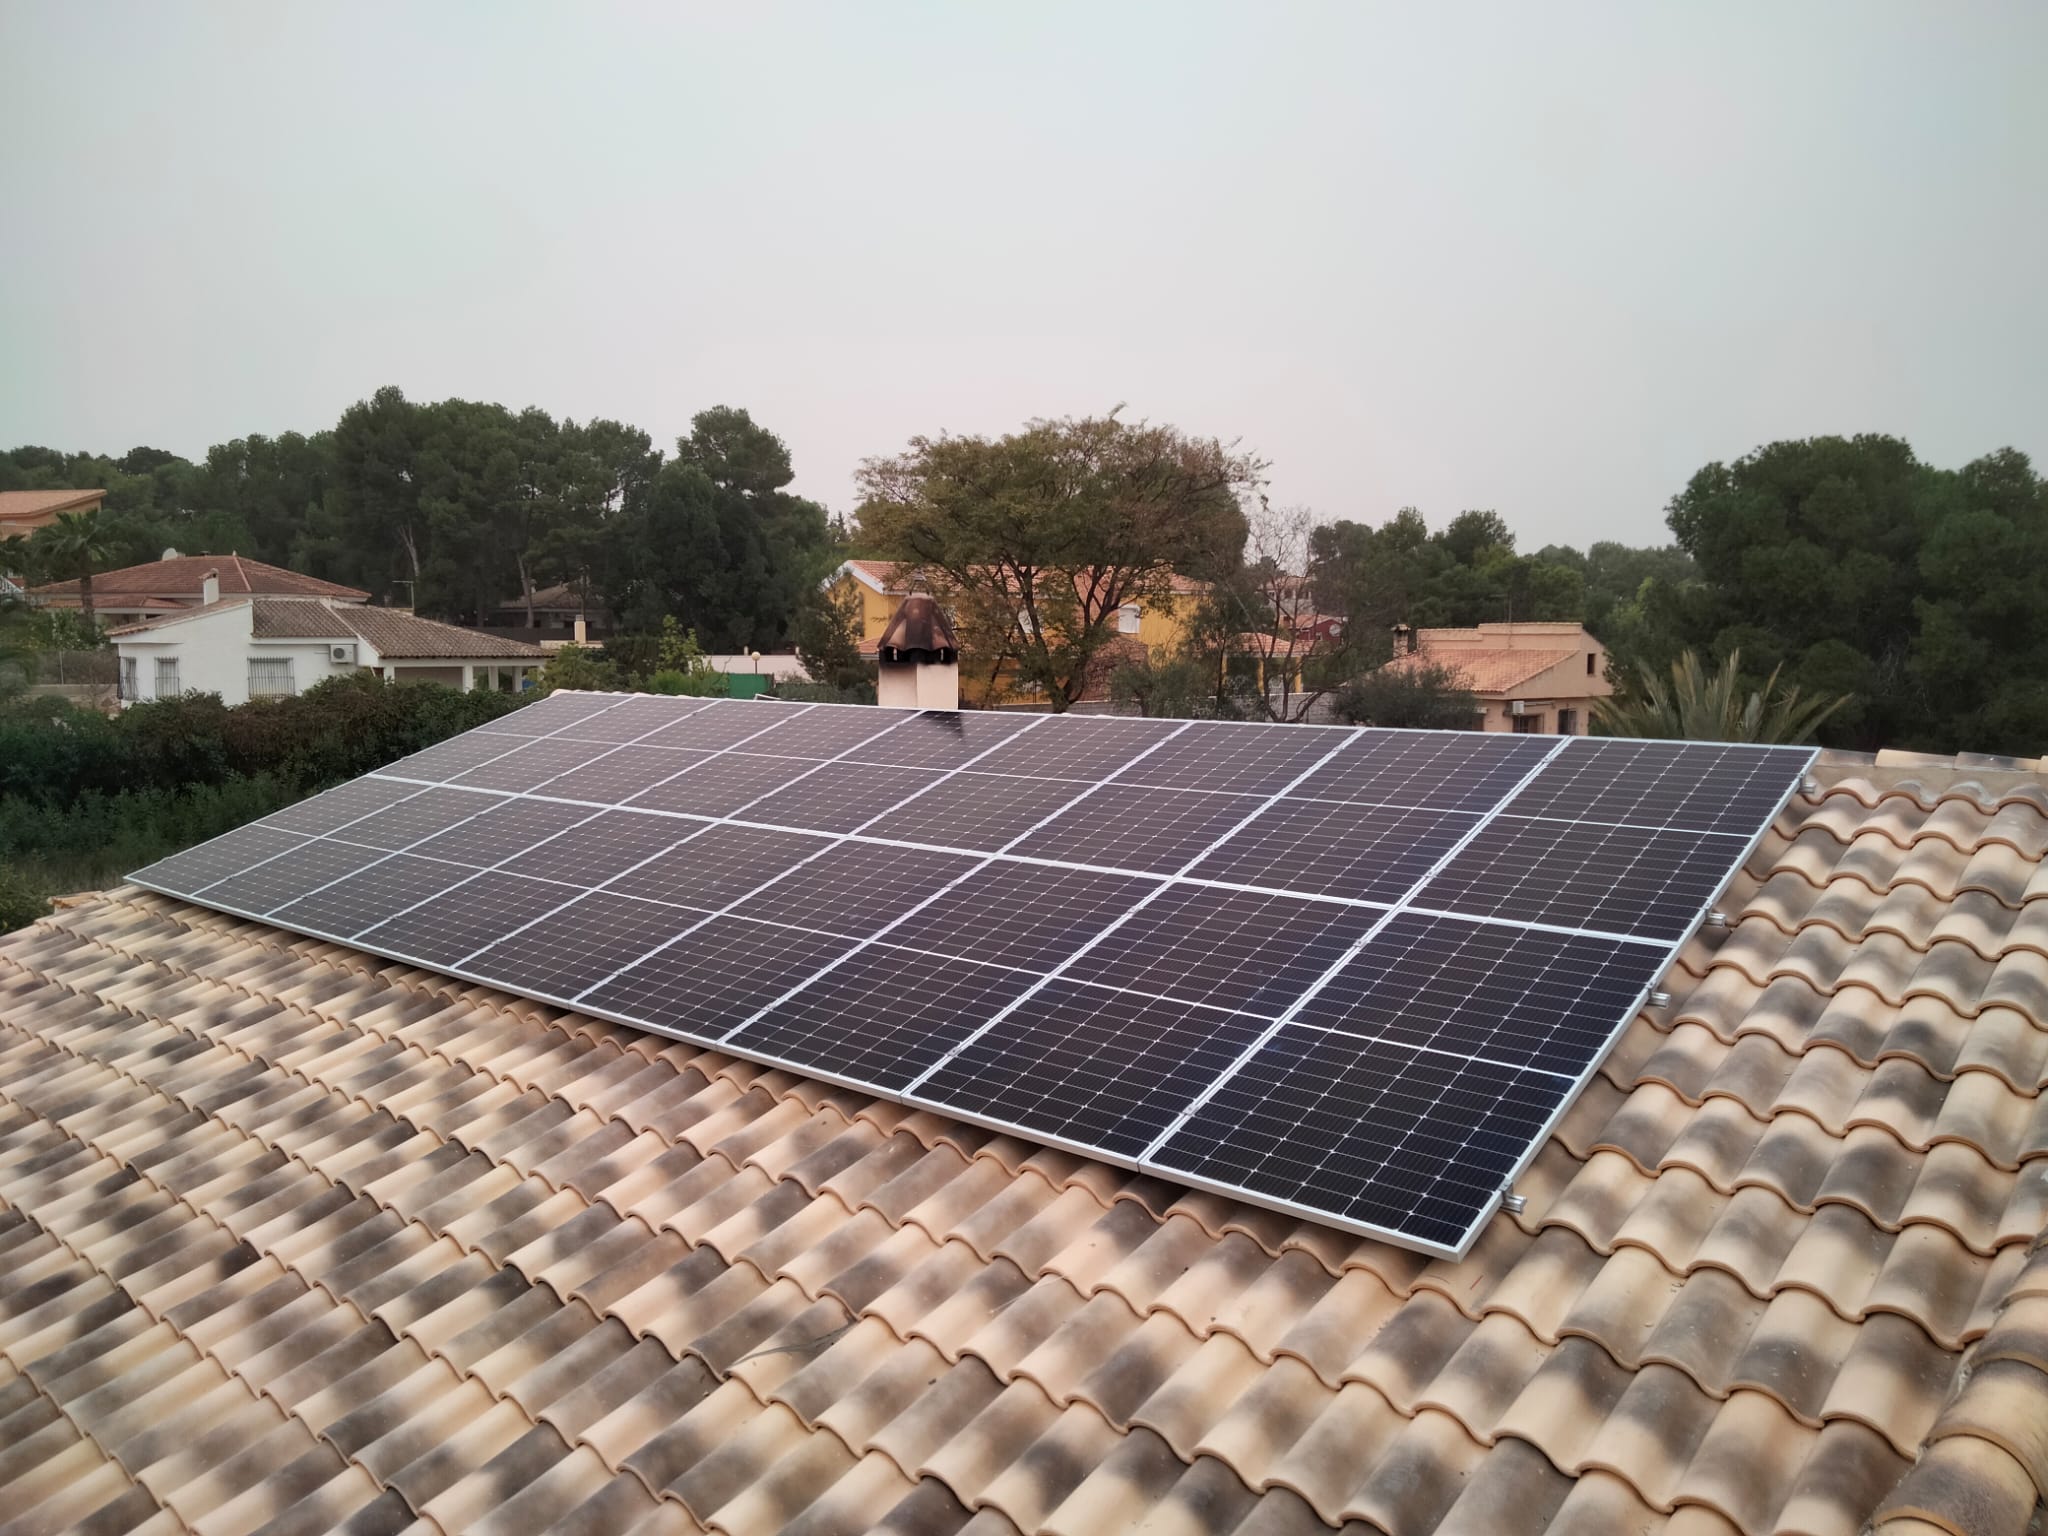 18X 385 wp Solar Panels, Fortuna, Murcia (Hybrid system)